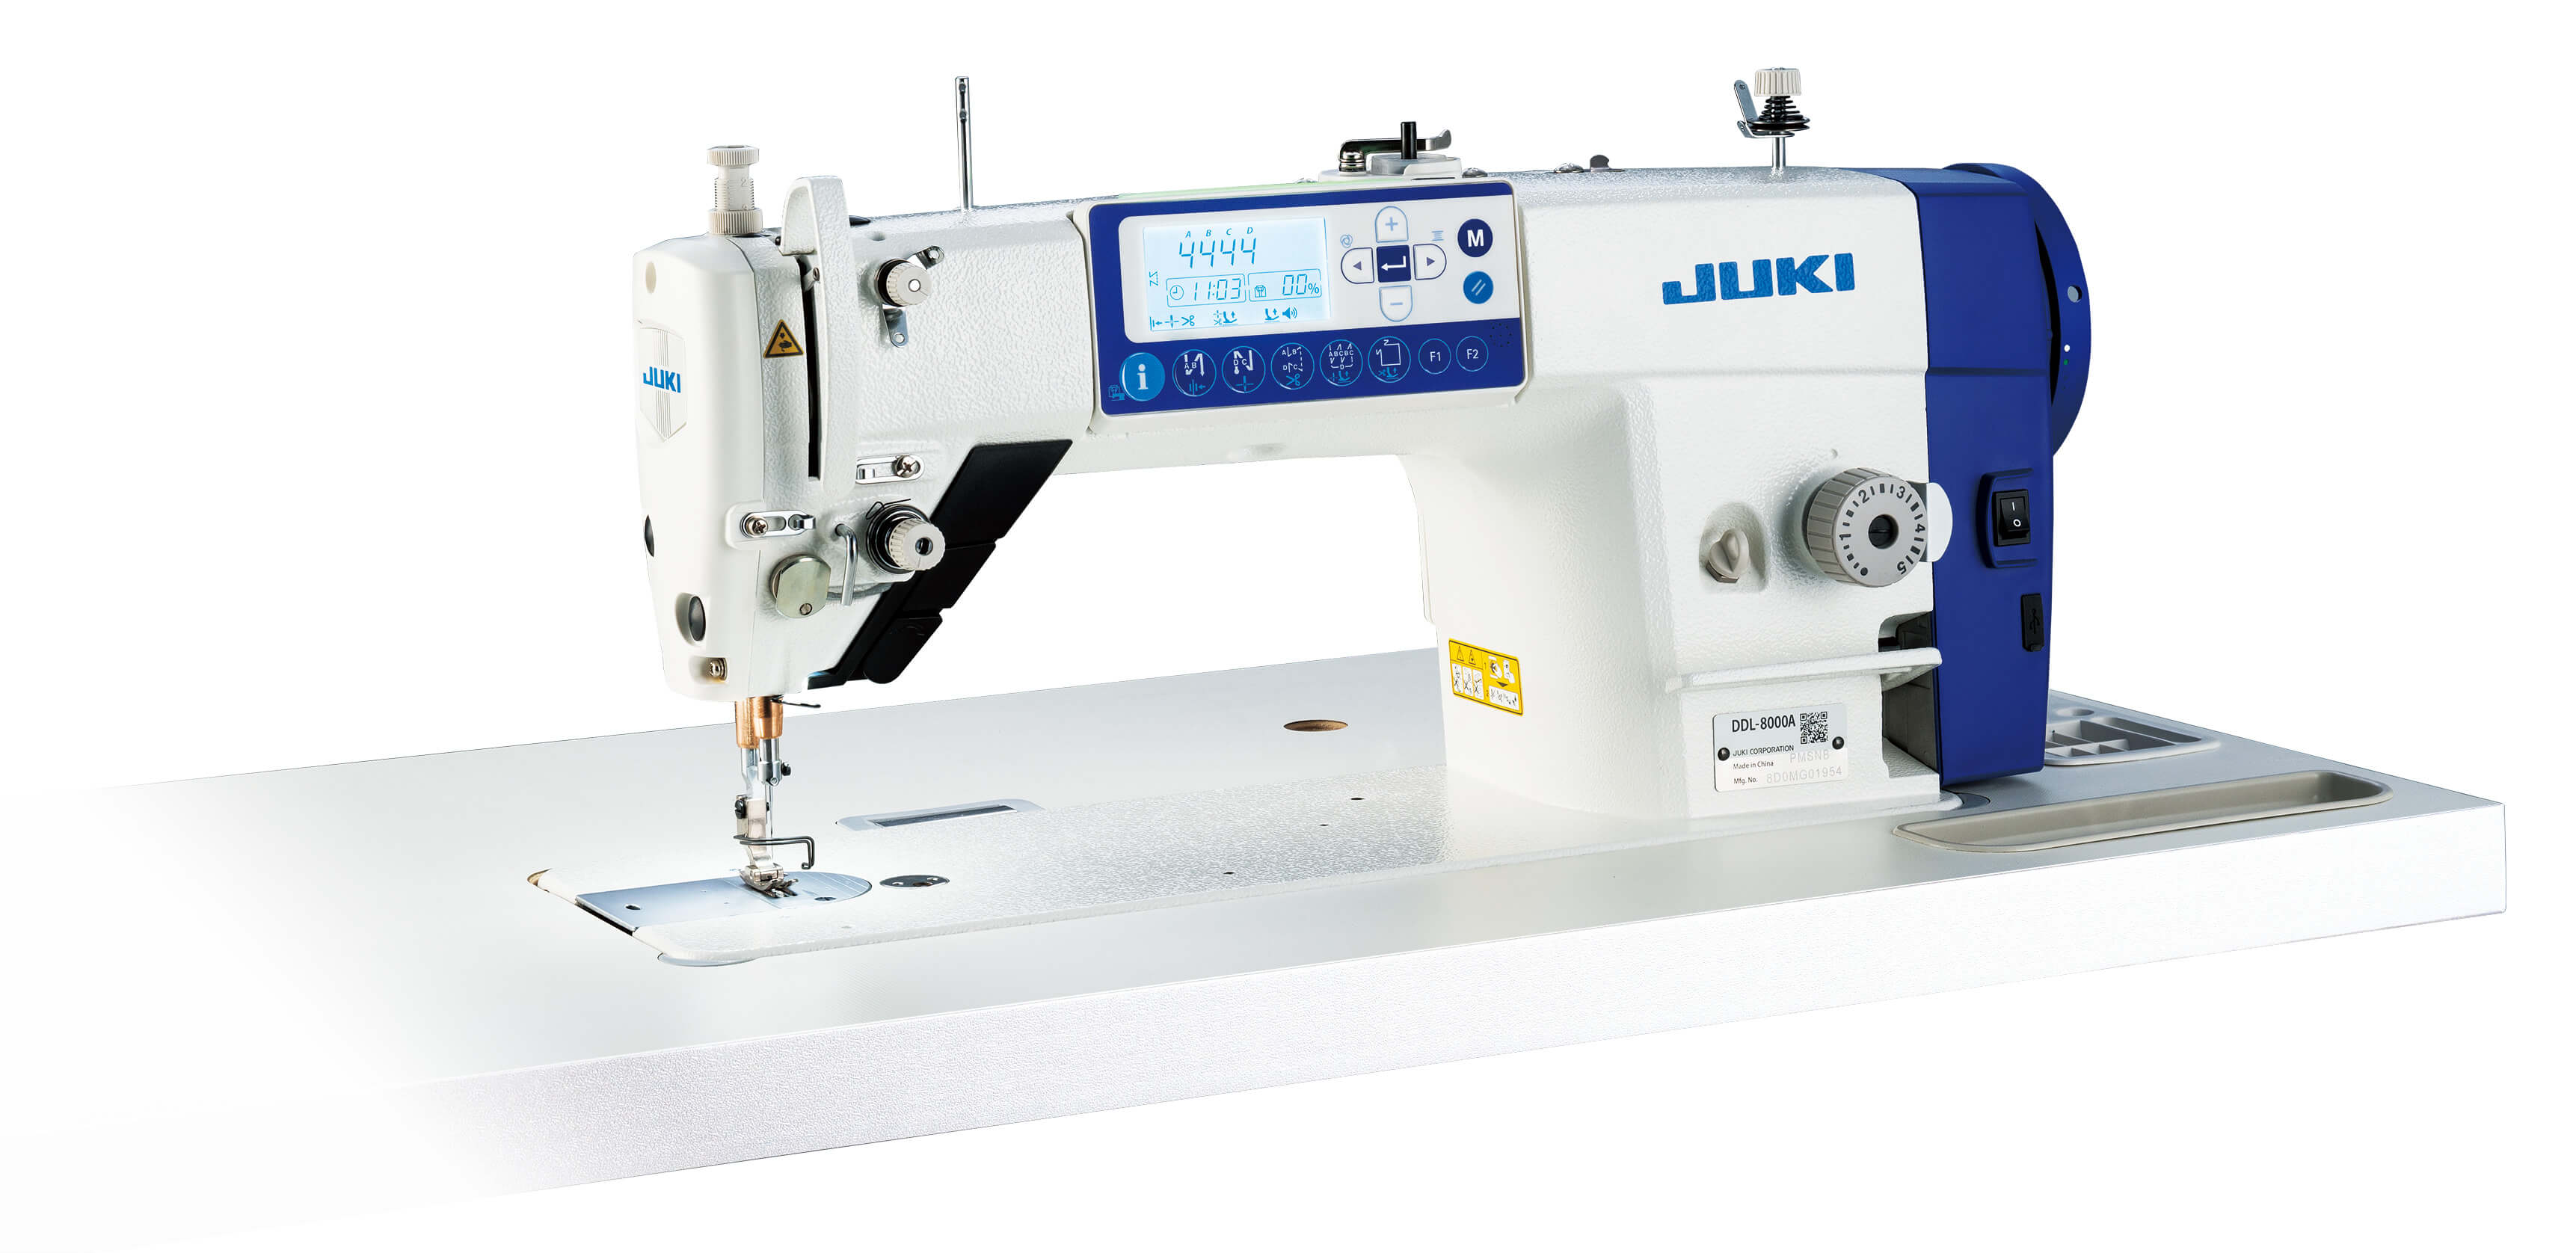 Купить машинку джуки. Швейная машинка Промышленная Juki. Juki DDL-8000ap-sh. Прямострочная Промышленная машина Juki DDL-8000 ASMS. Промышленная швейная машинка Jumi.